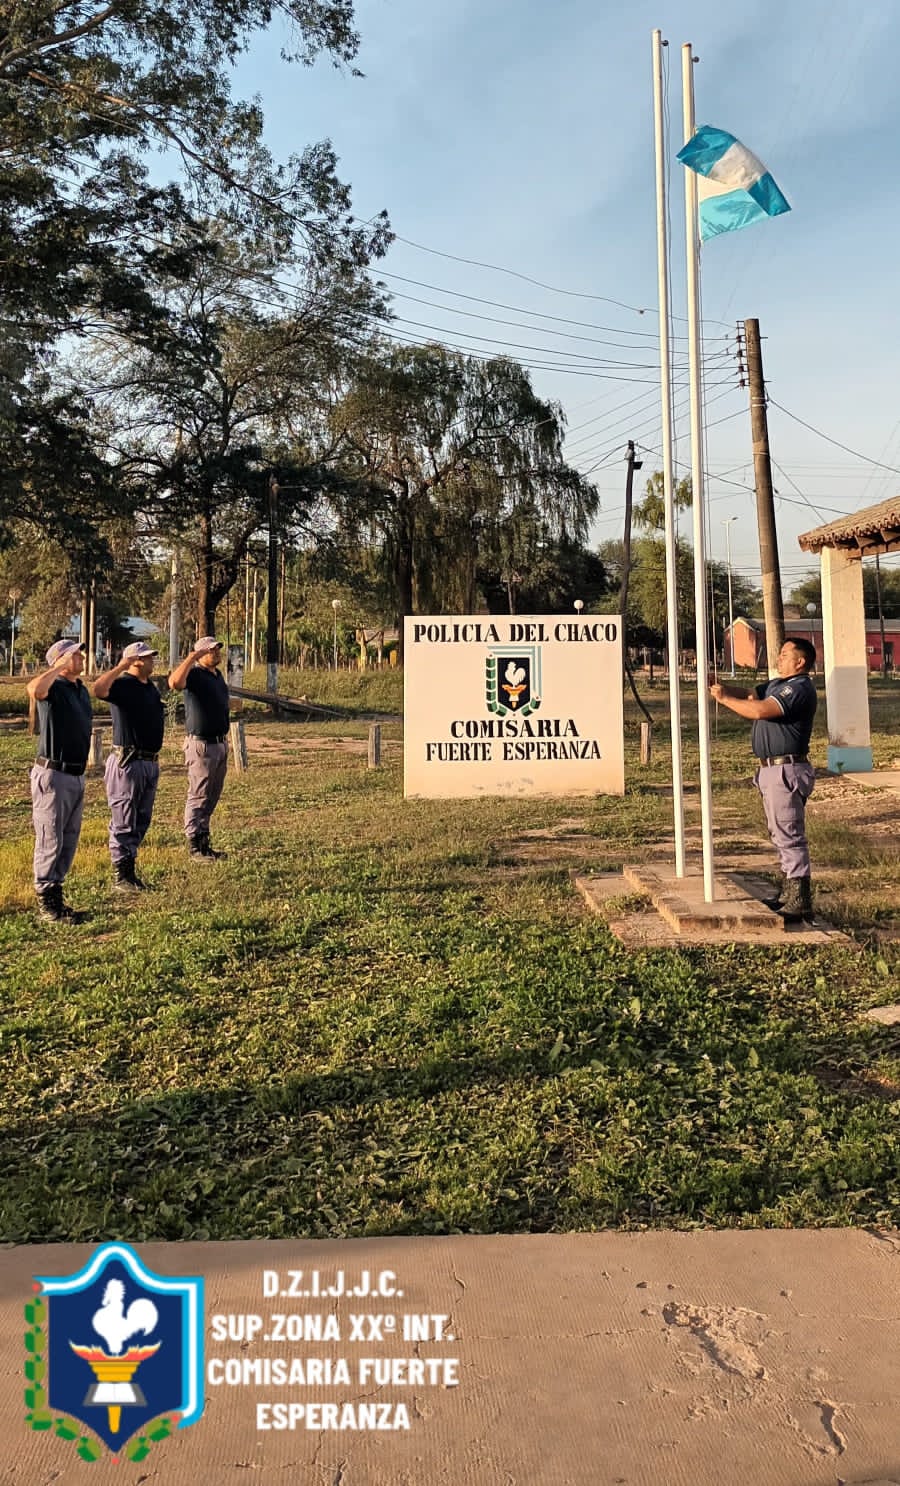 Fuerte Esperanza: La Policía del Chaco Celebra 71 Años de Servicio y Compromiso con la comunidad.